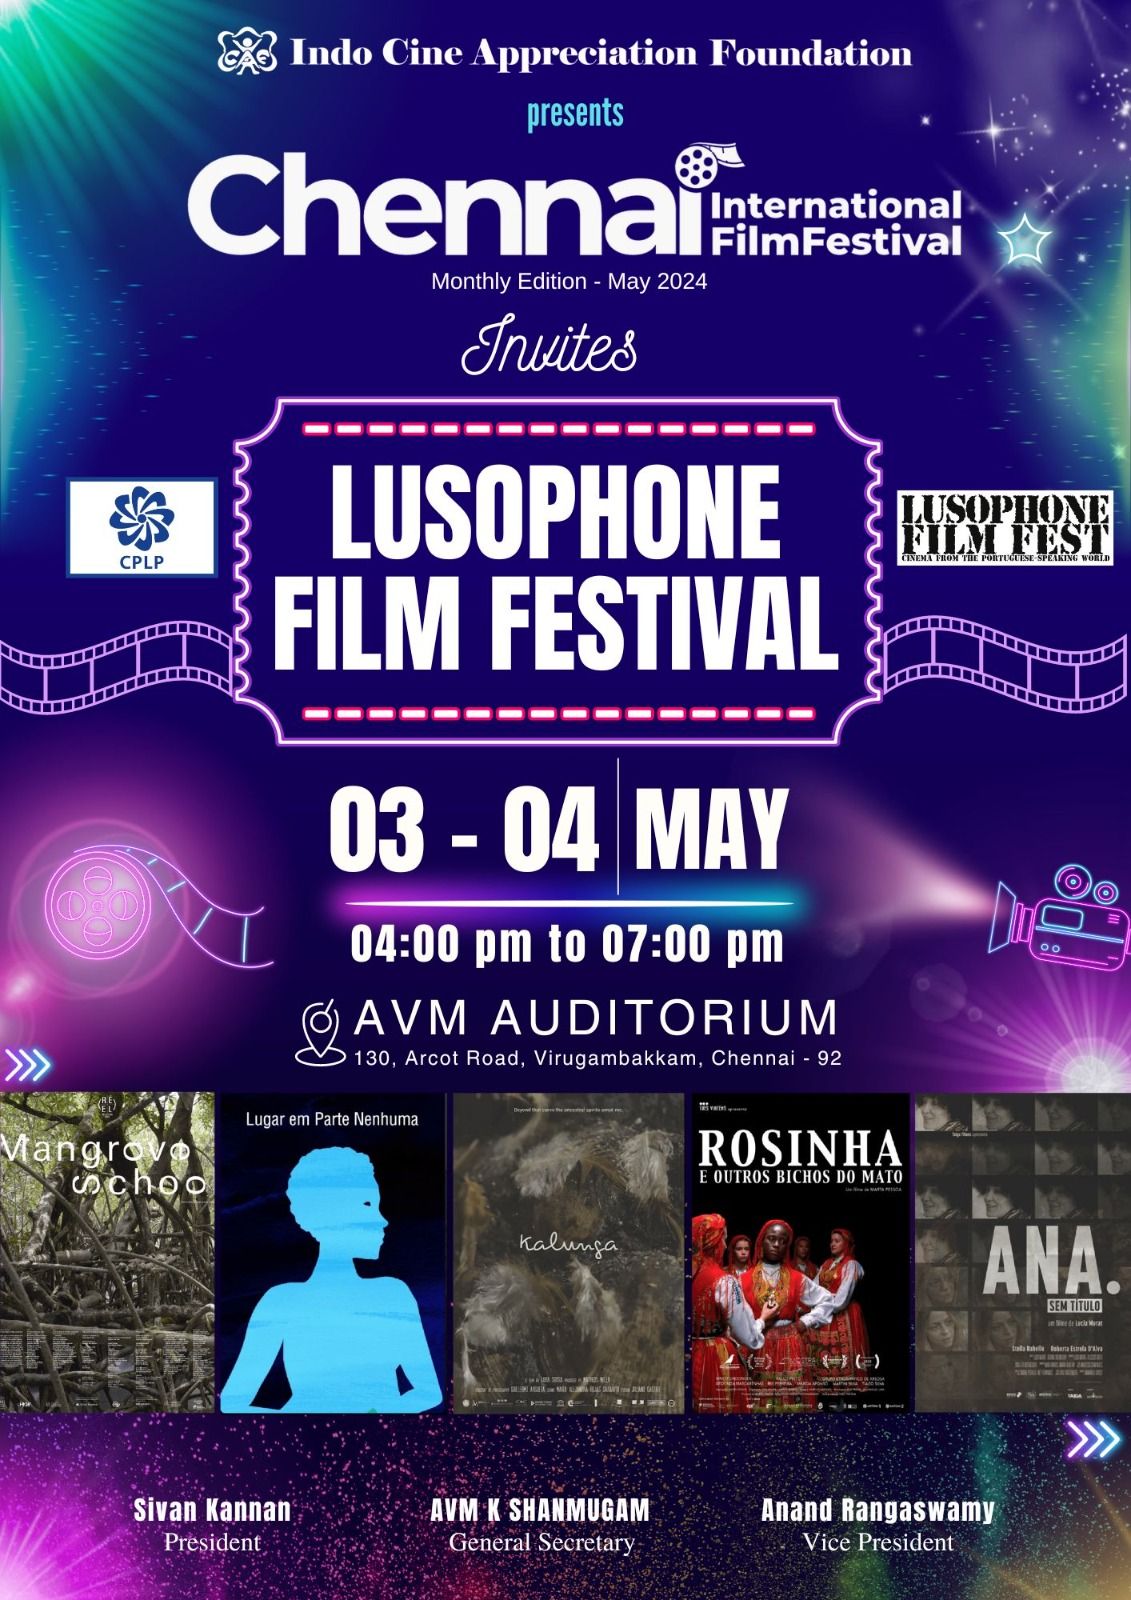 Lusophone Film Festival